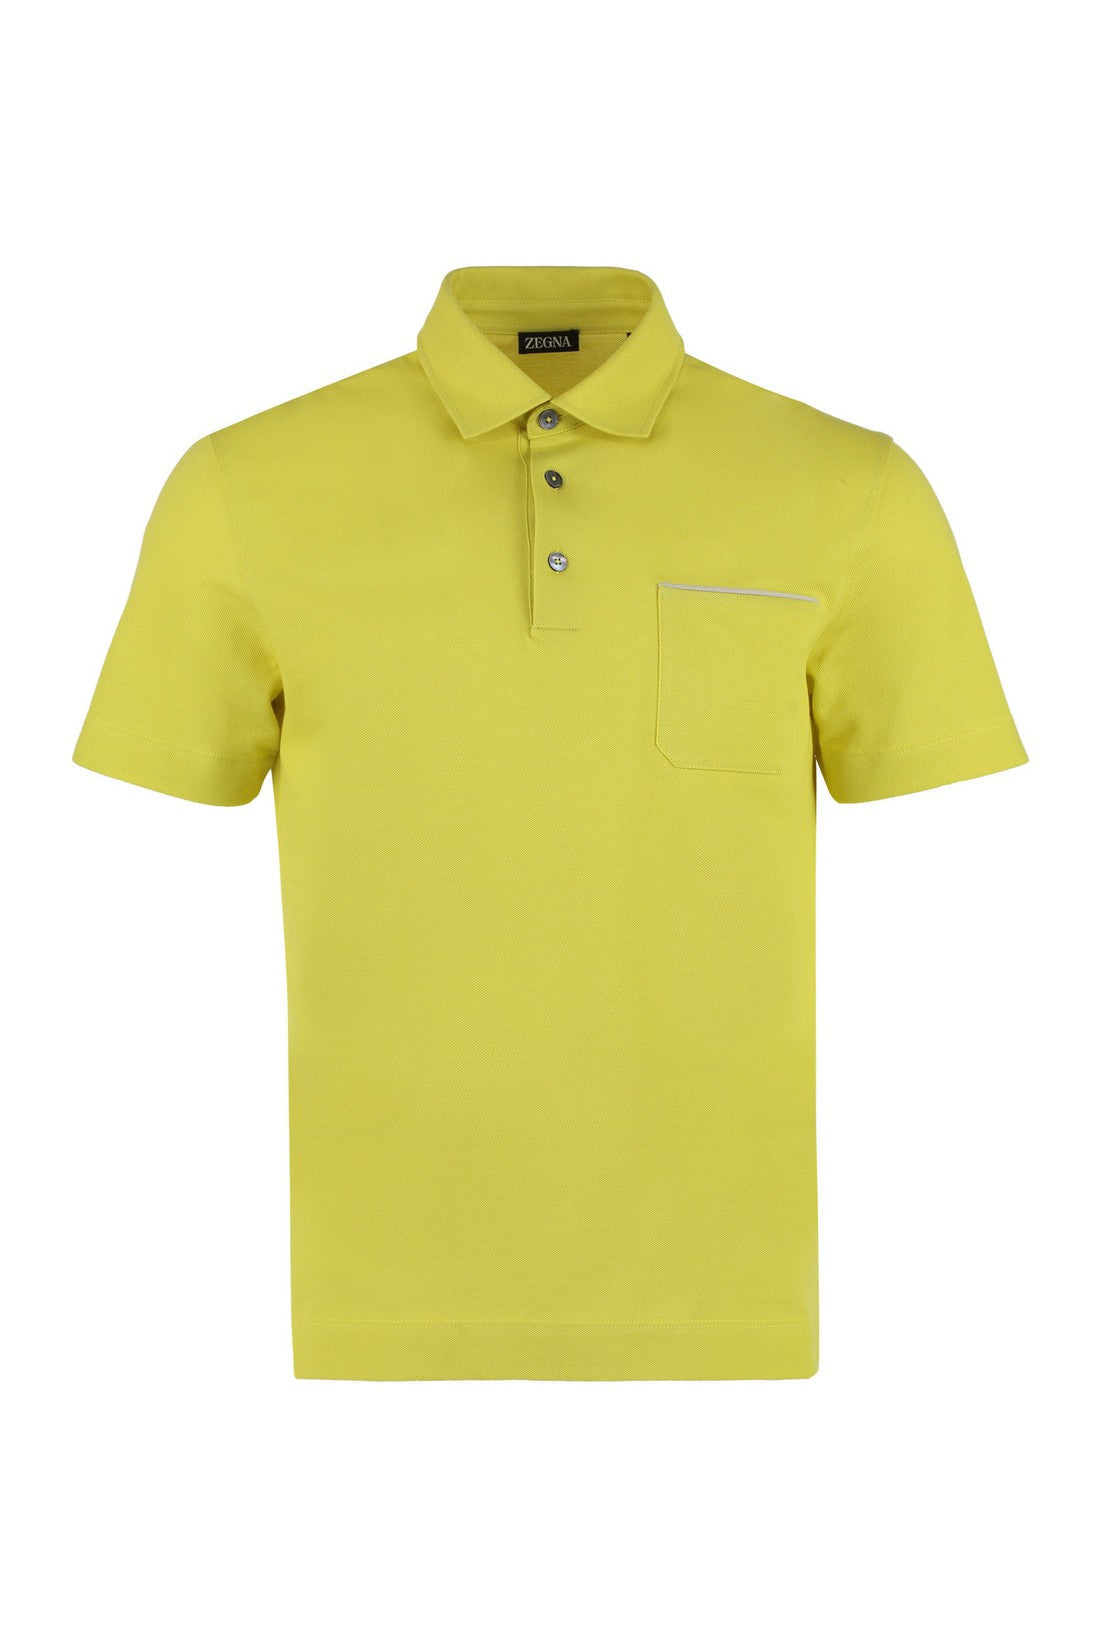 Zegna-OUTLET-SALE-Cotton-piqué polo shirt-ARCHIVIST